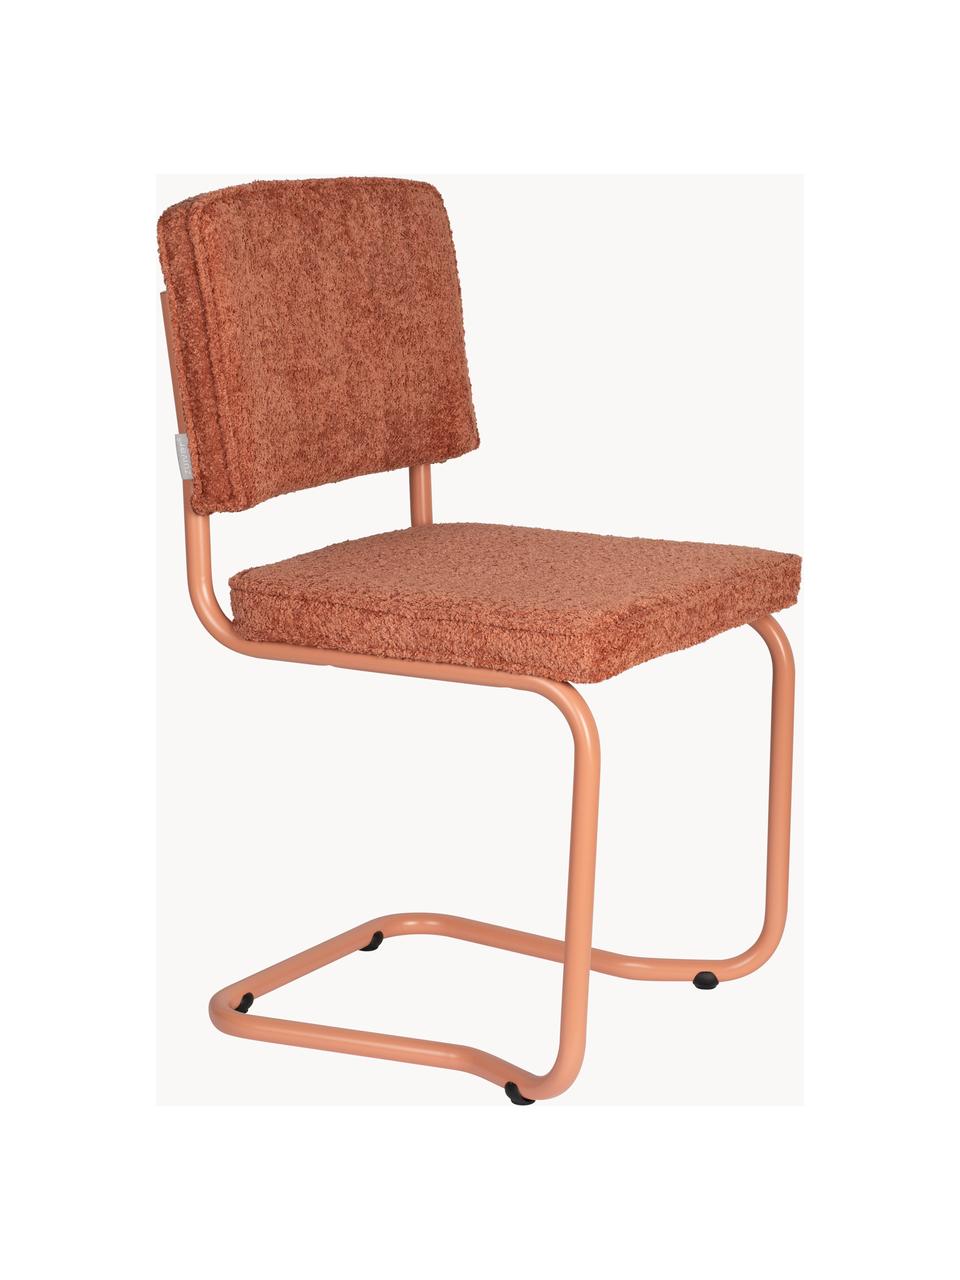 Houpací židle Kink, 2 ks, Terakotová, broskvová, Š 48 cm, H 48 cm